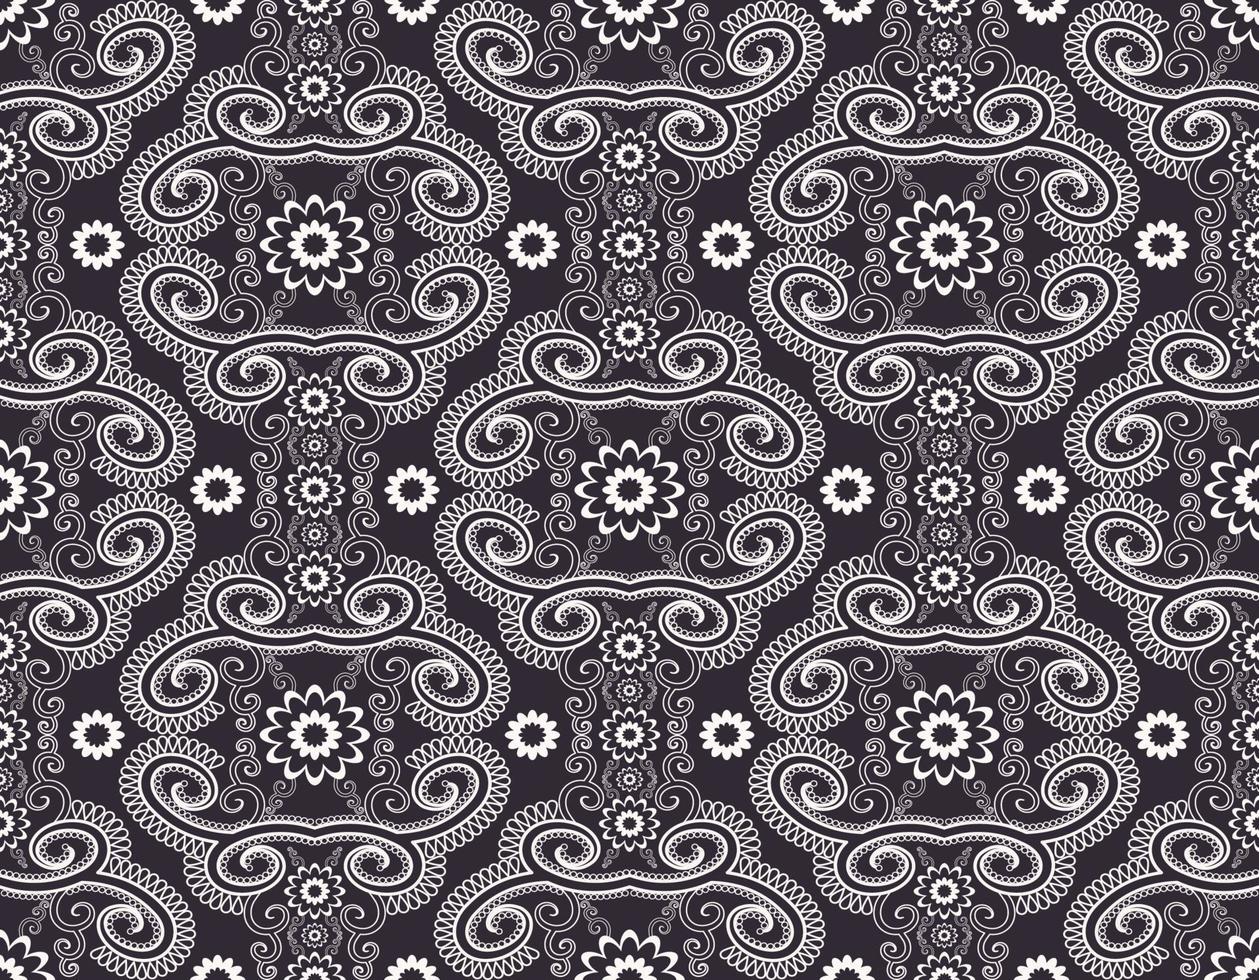 abstrakte Blumenform schwarz-weiße Farbe nahtloser Musterhintergrund. Verwendung für Stoffe, Textilien, Innendekorationselemente, Polster, Verpackungen. vektor